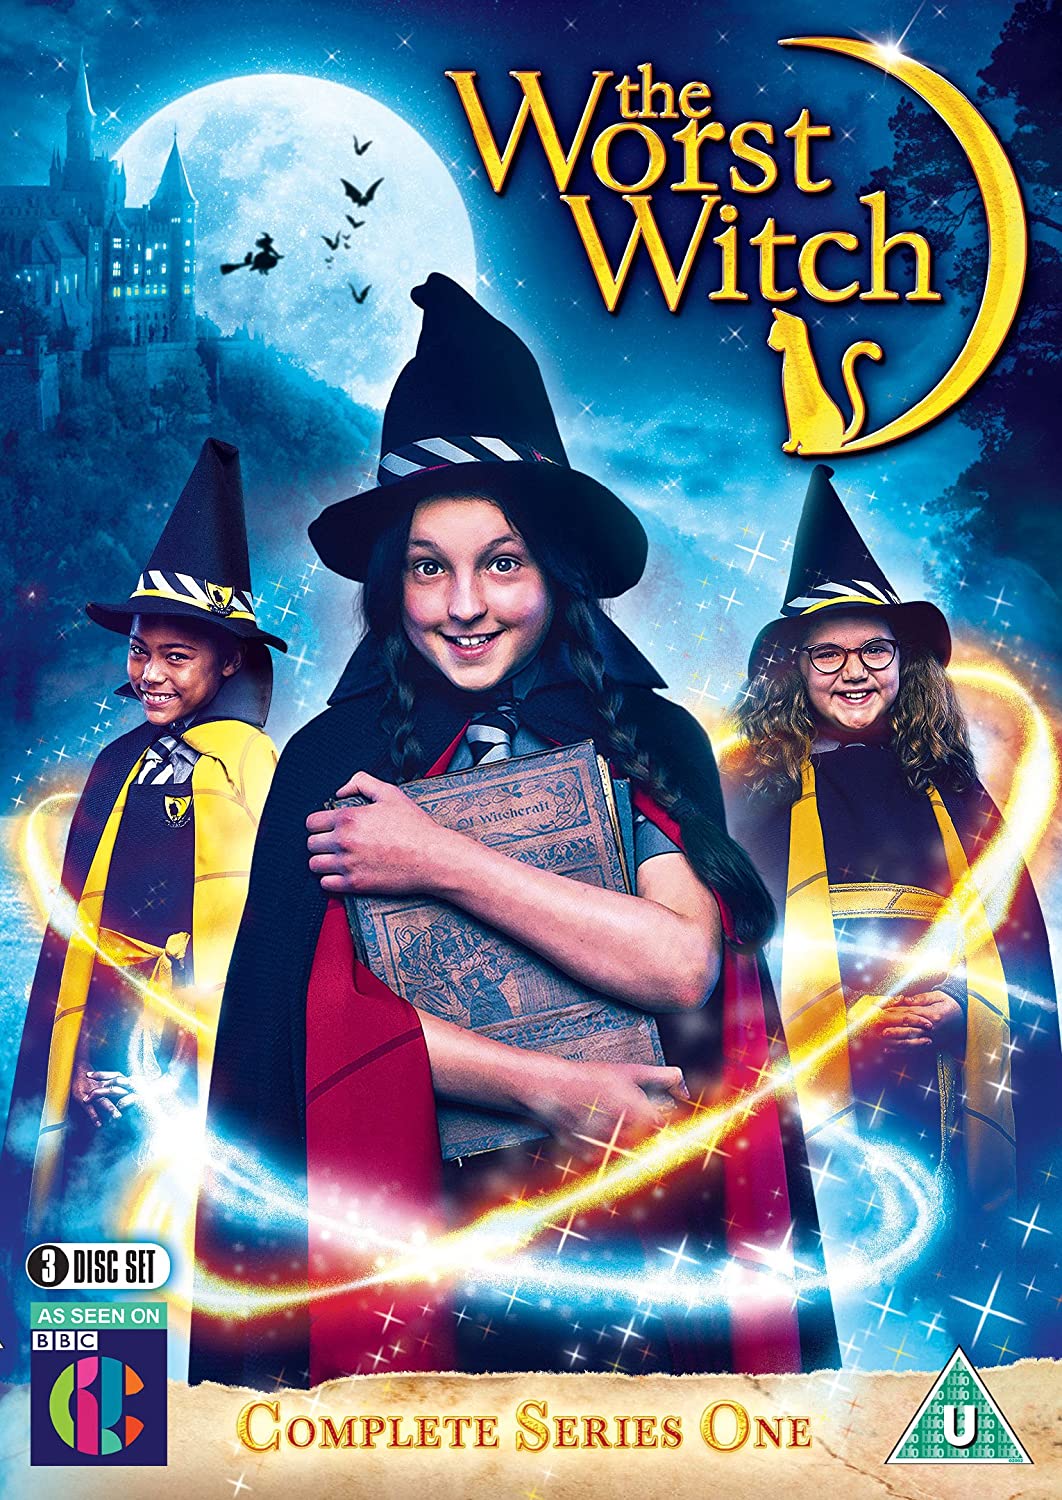 ดูหนังออนไลน์ฟรี The Worst Witch Season 3 (2019) โอมเพี้ยง! แม่มดน้อยสู้ตาย ซีซั่น 3 ตอนที่ 4